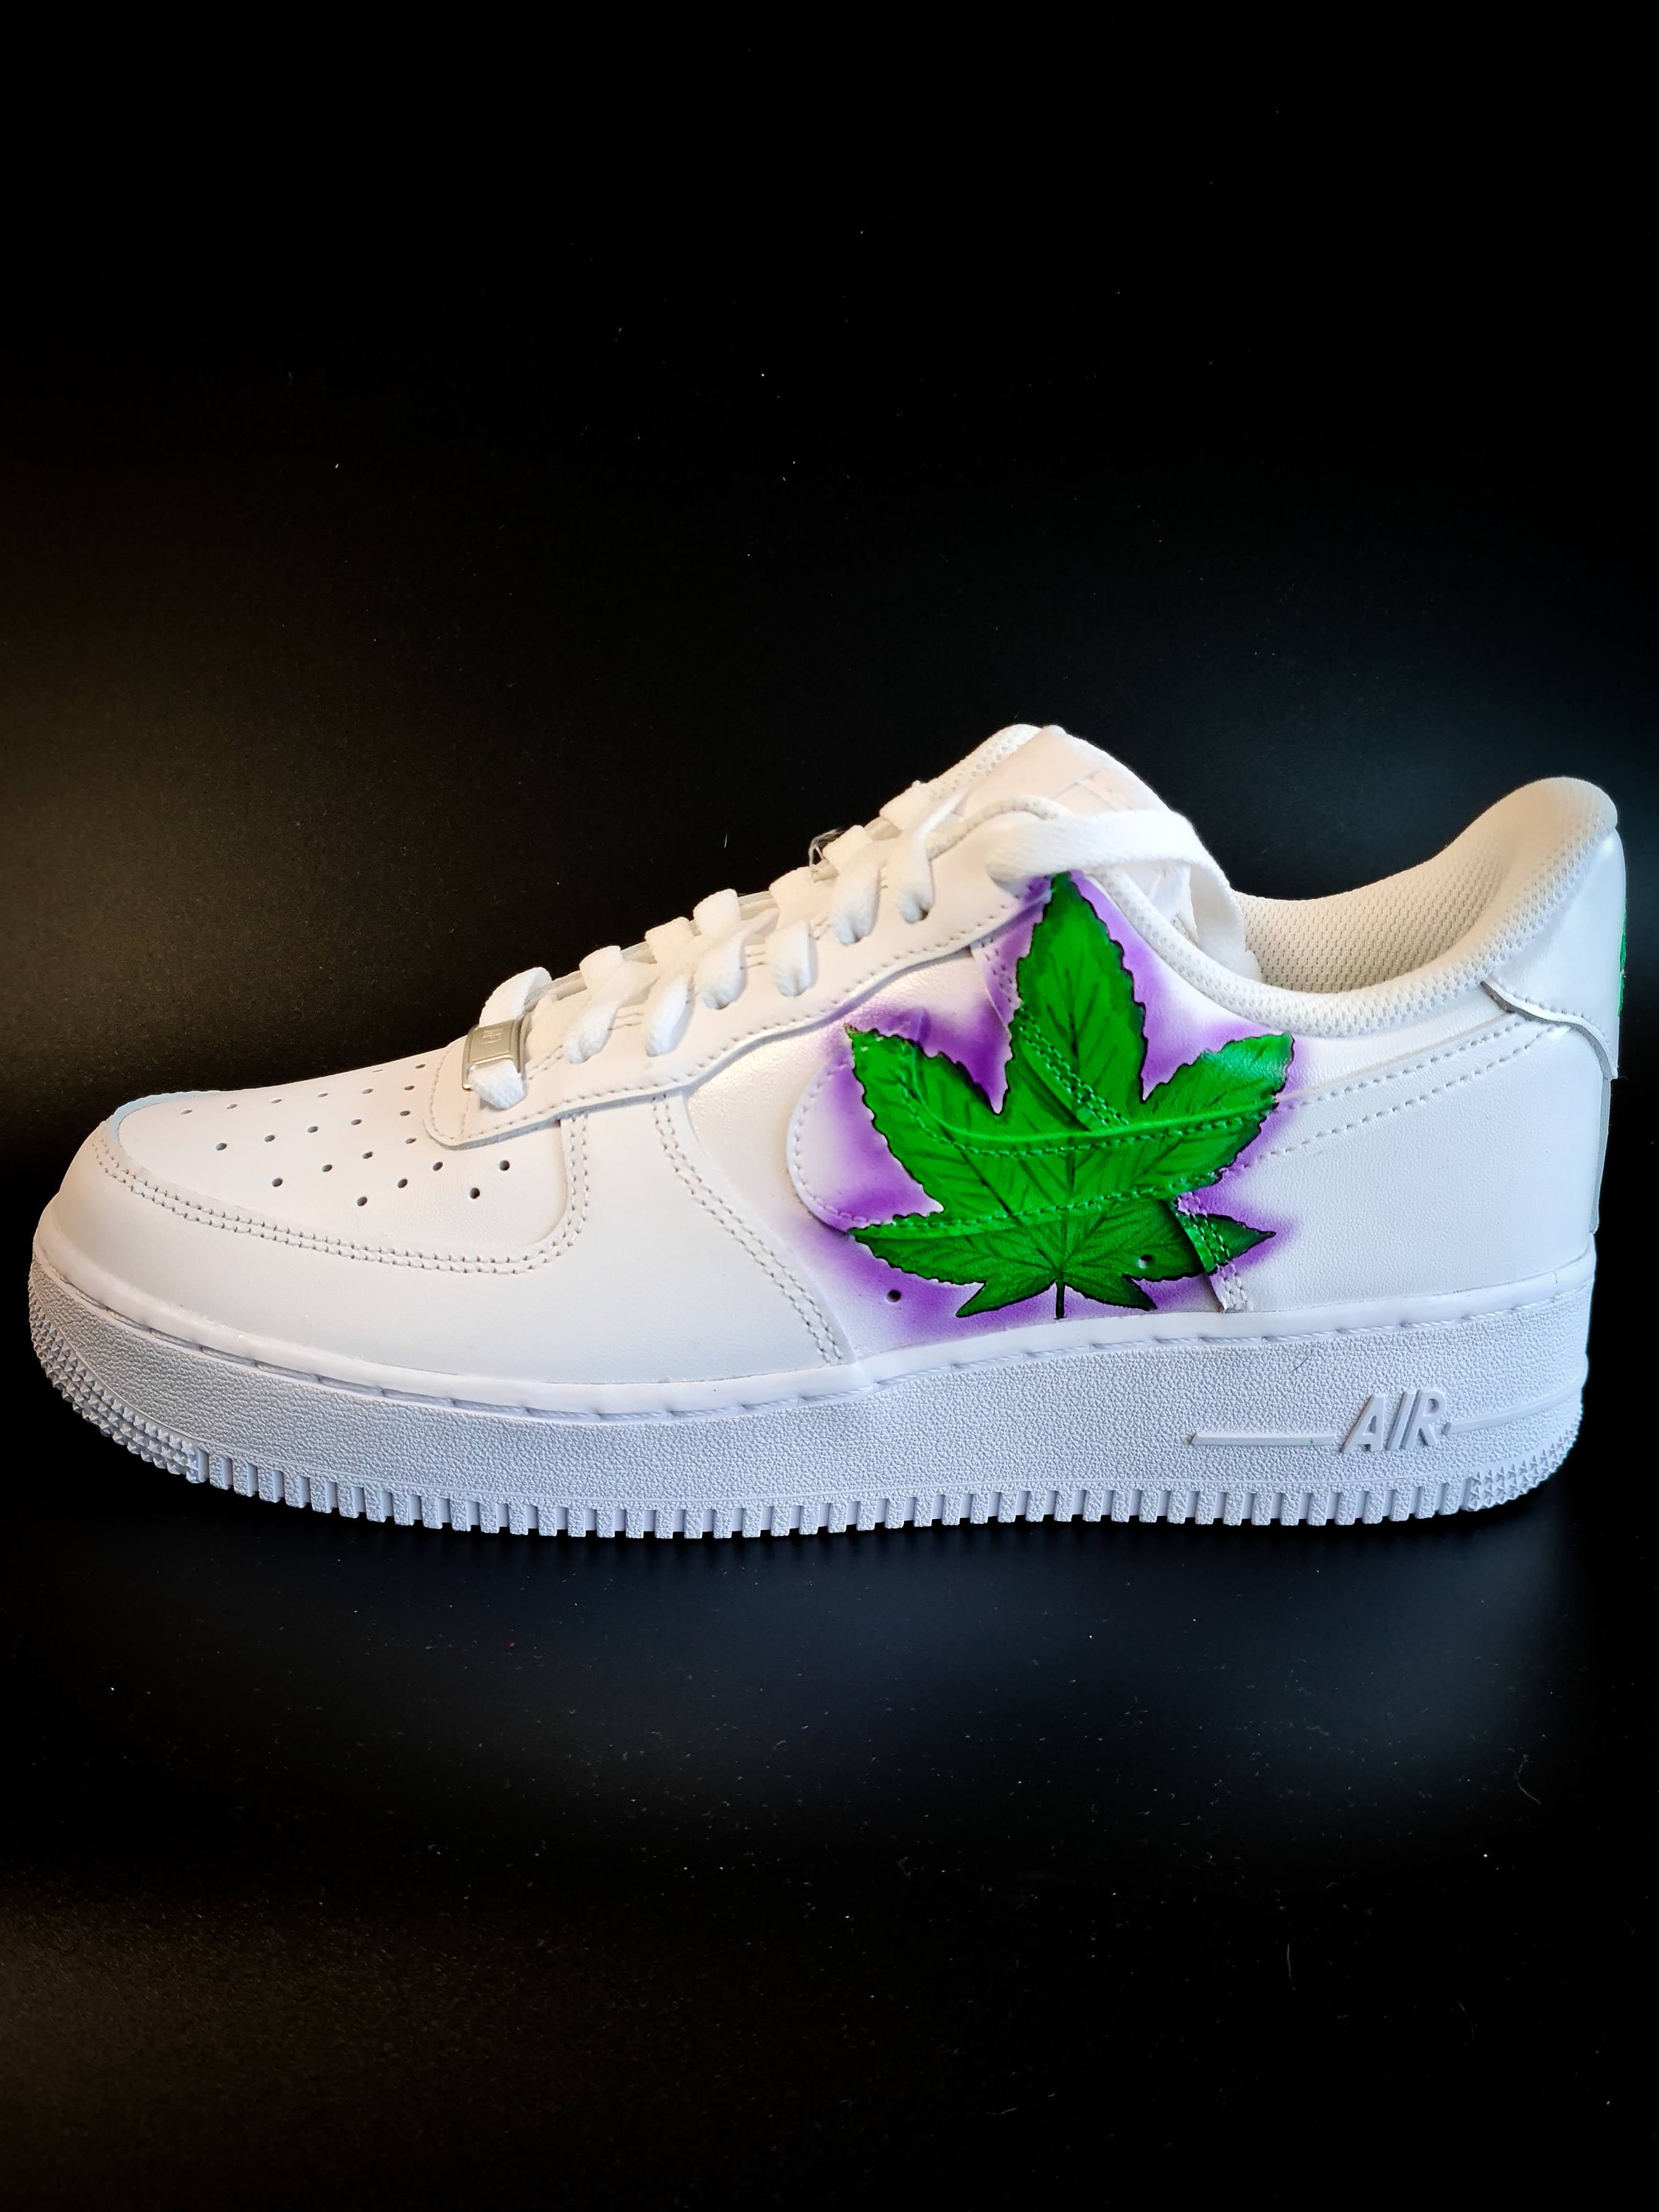 Nike Air Force 1 Custom Weed - Etsy